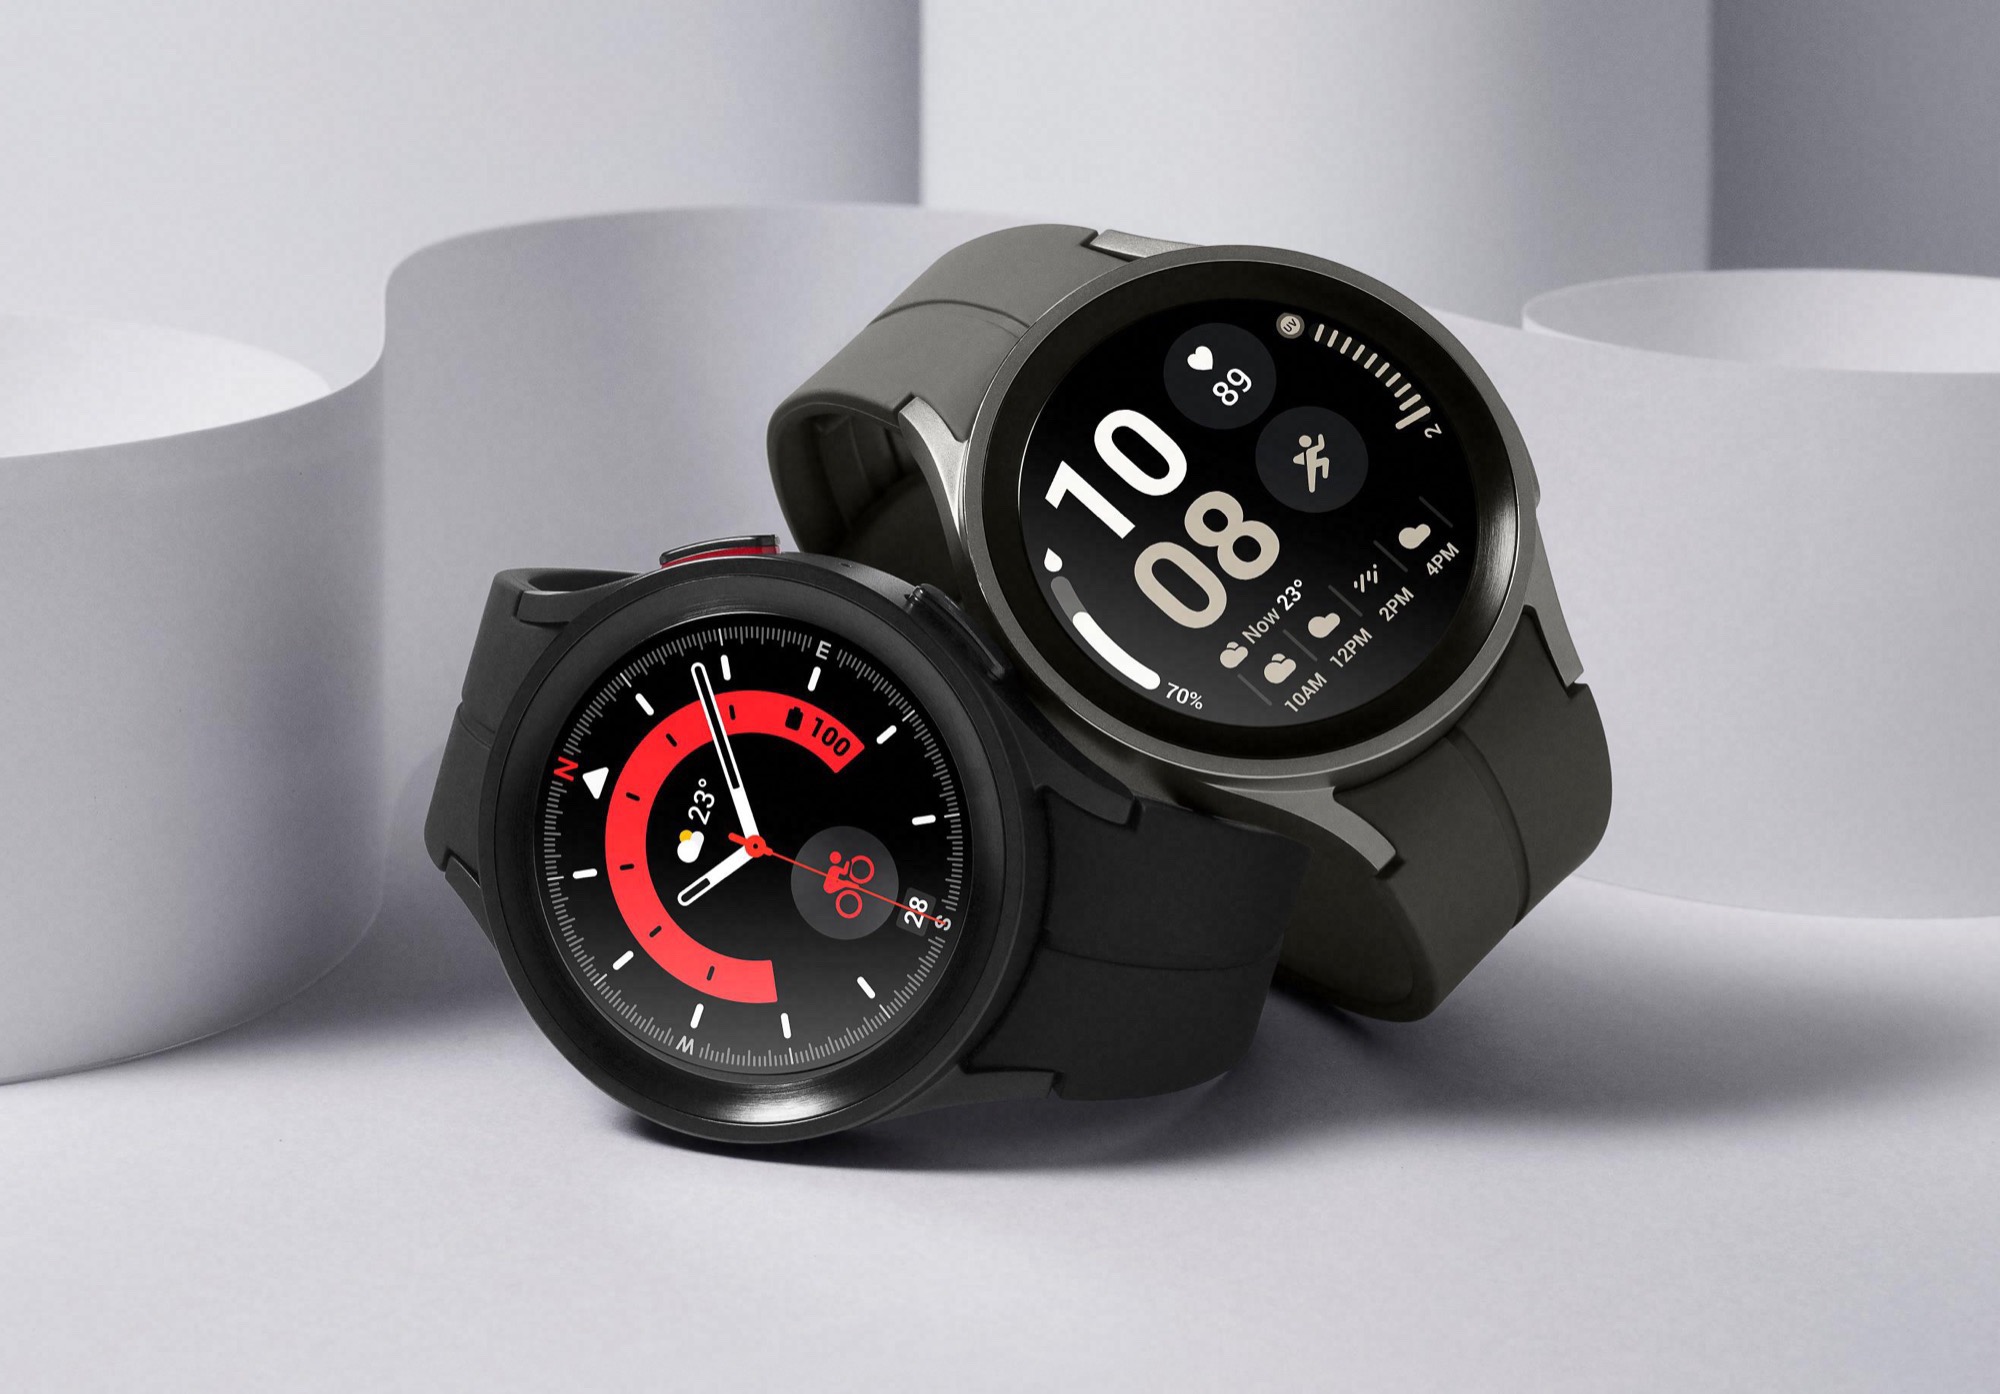 Oferta: Samsung Galaxy Watch5 Pro fabricado en titanio con gran batería, ECG y medición de la presión arterial, ya disponible por solo 299 euros